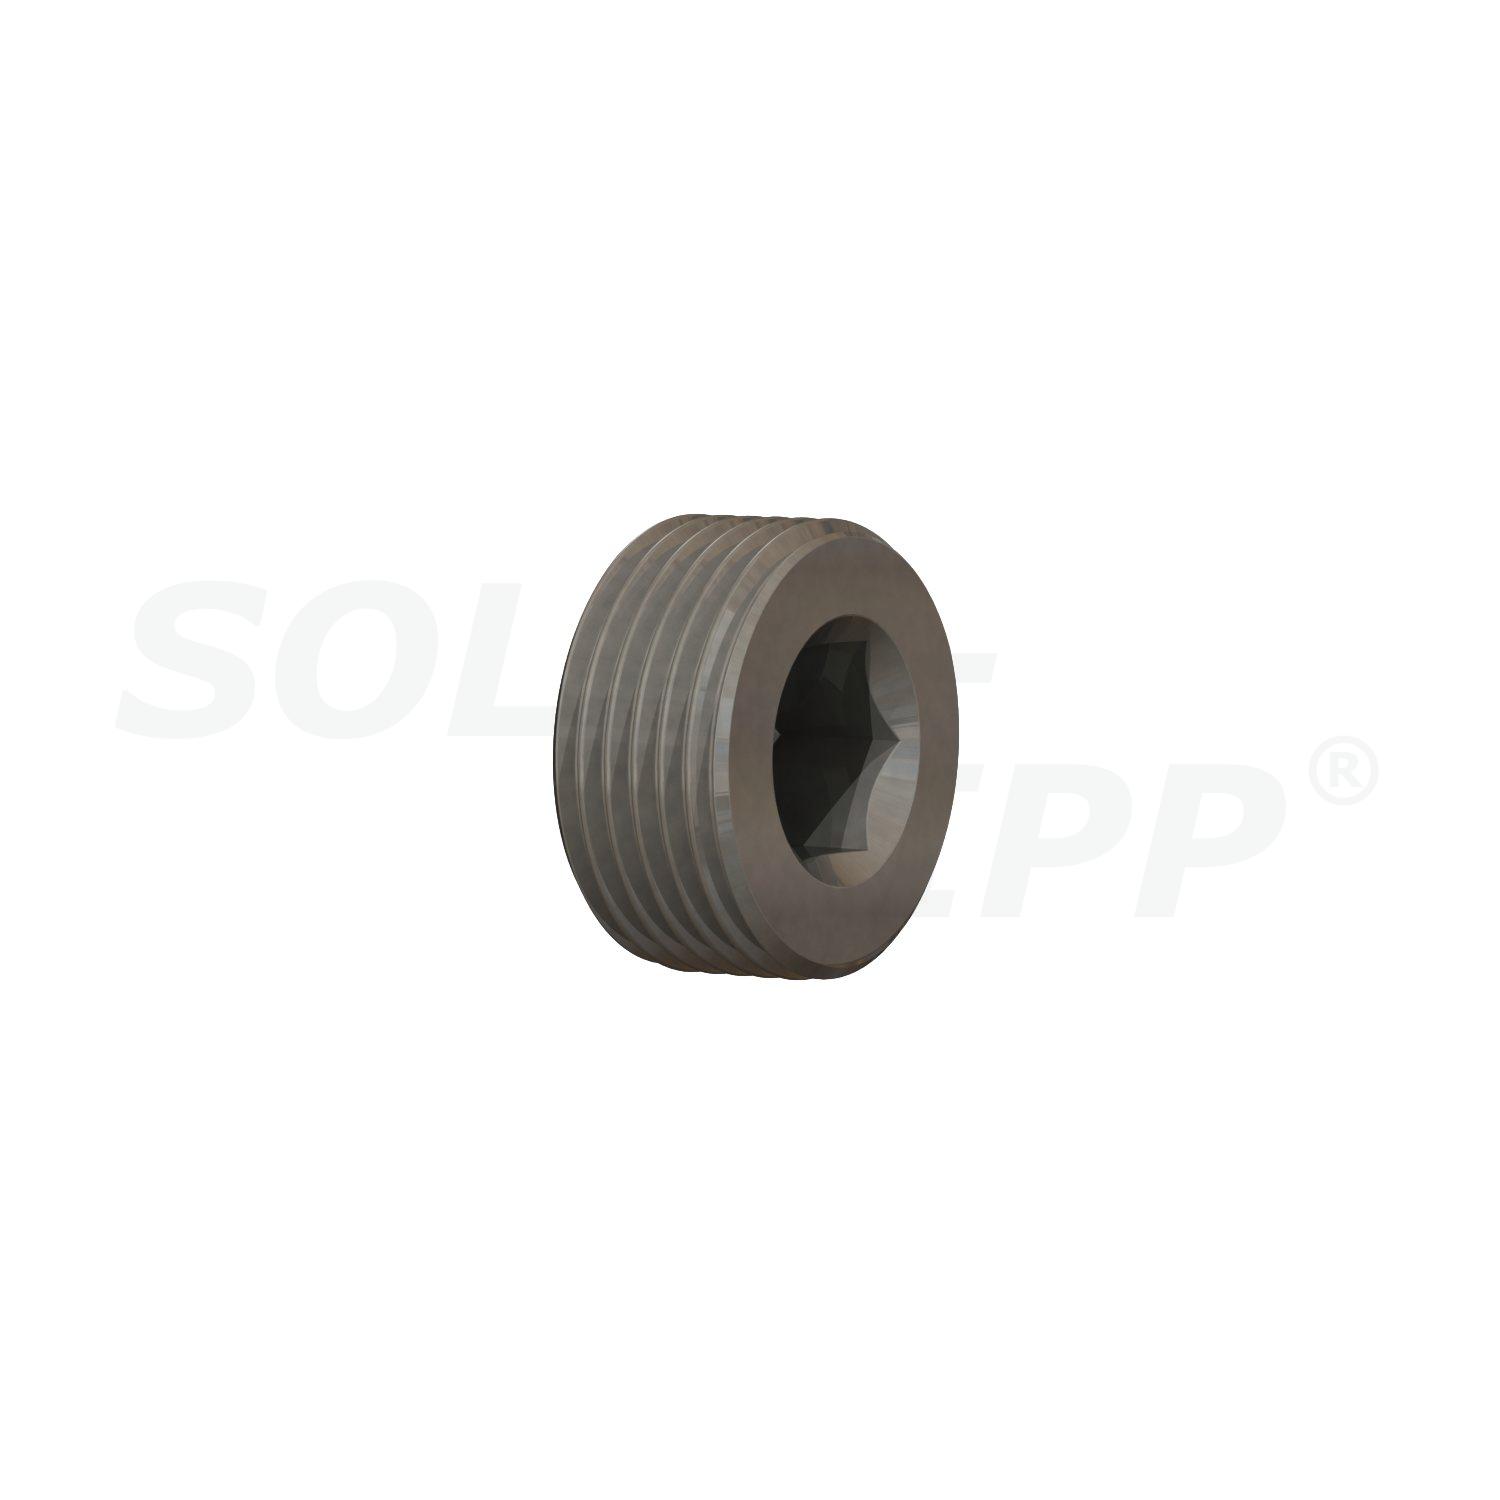 SOLAR-RIPP ® 3/4" schroefdraadplug van roestvrij staal